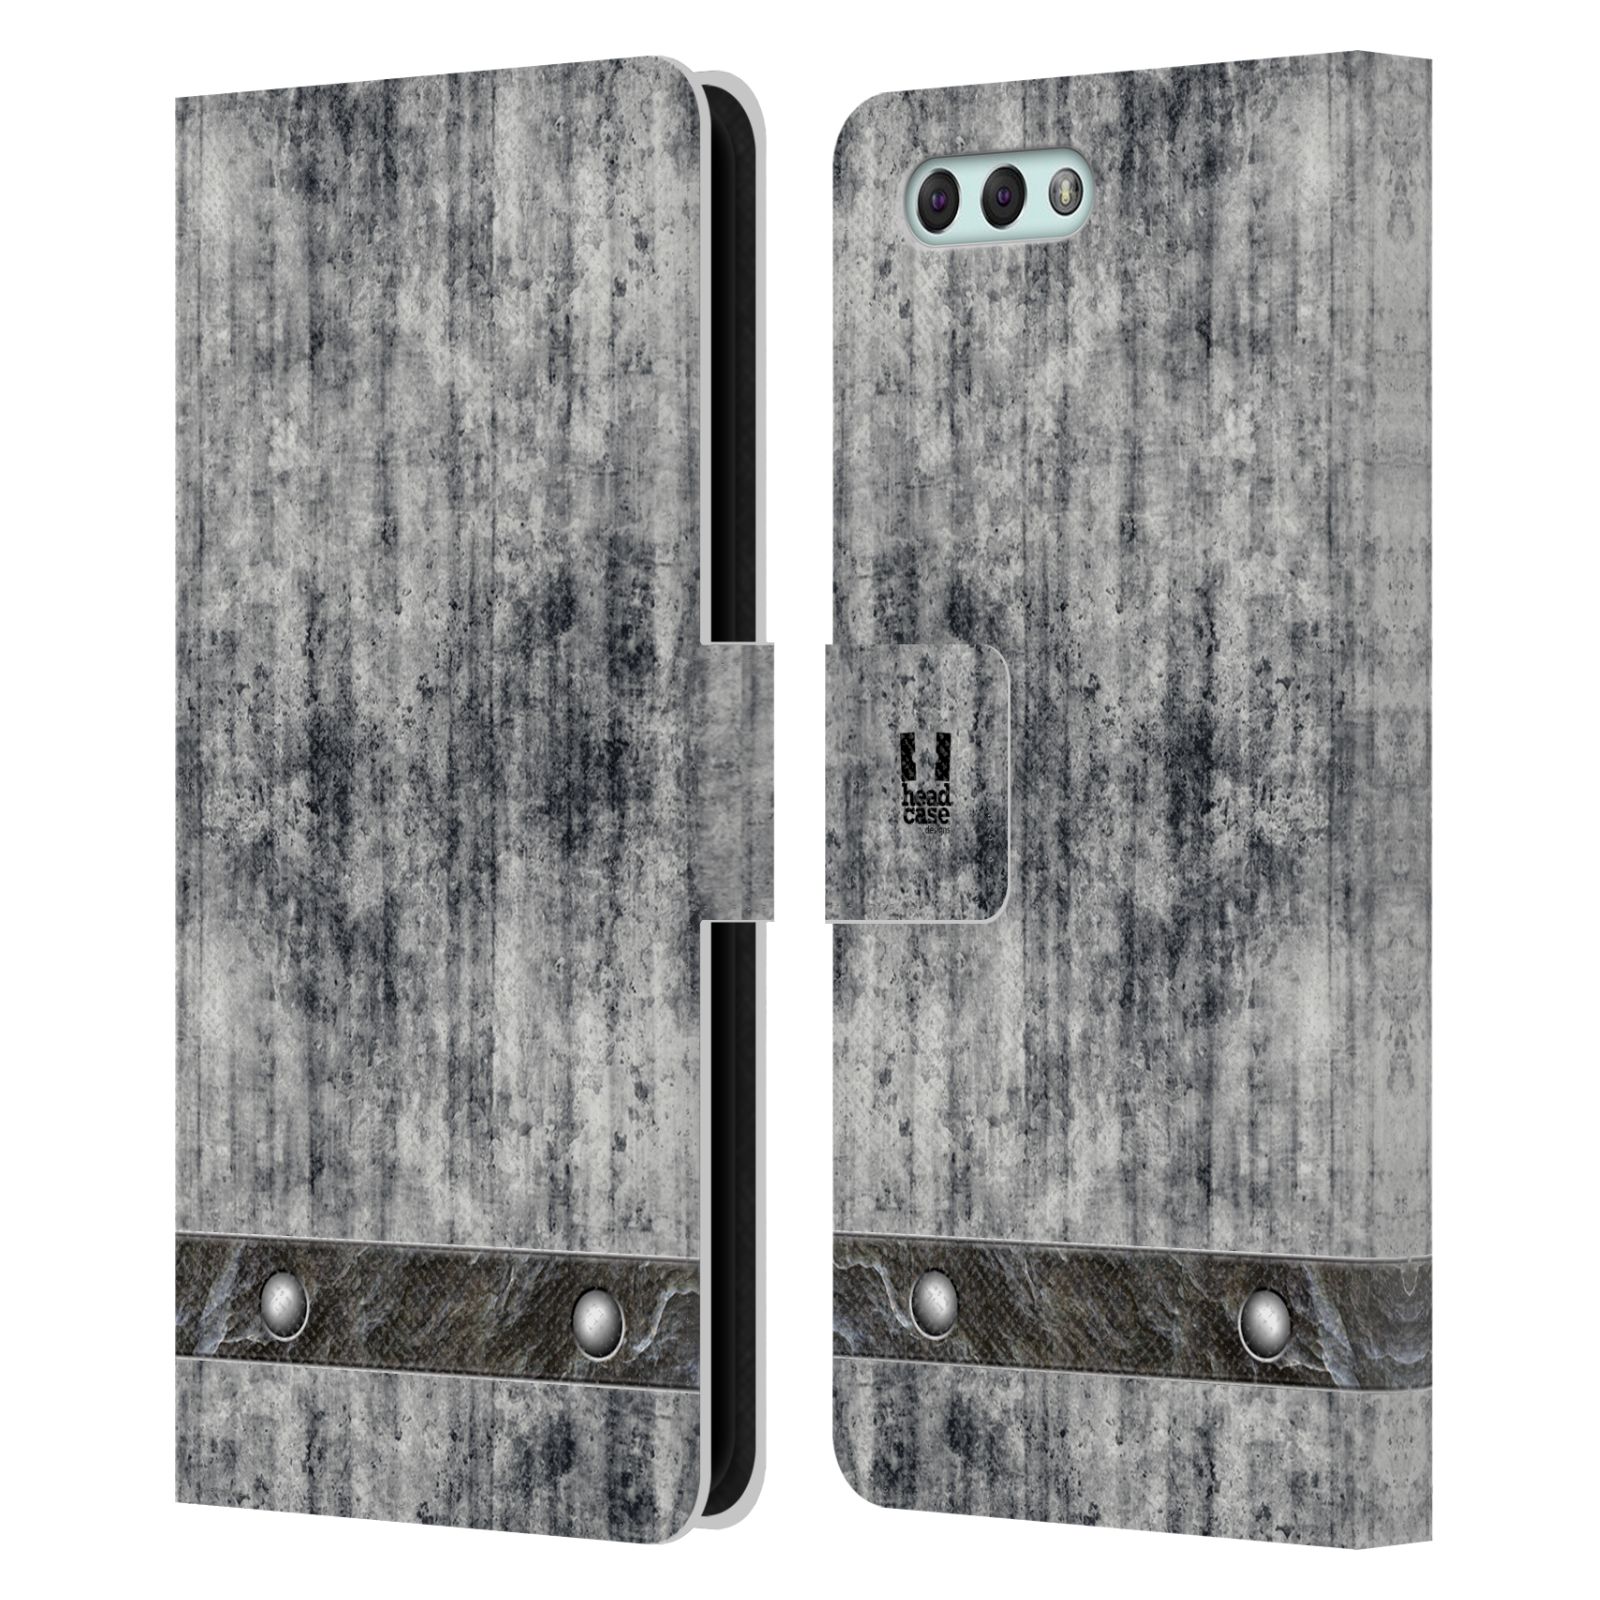 Pouzdro pro mobil Asus Zenfone 4 ZE554KL  - Stavební textura šedý beton